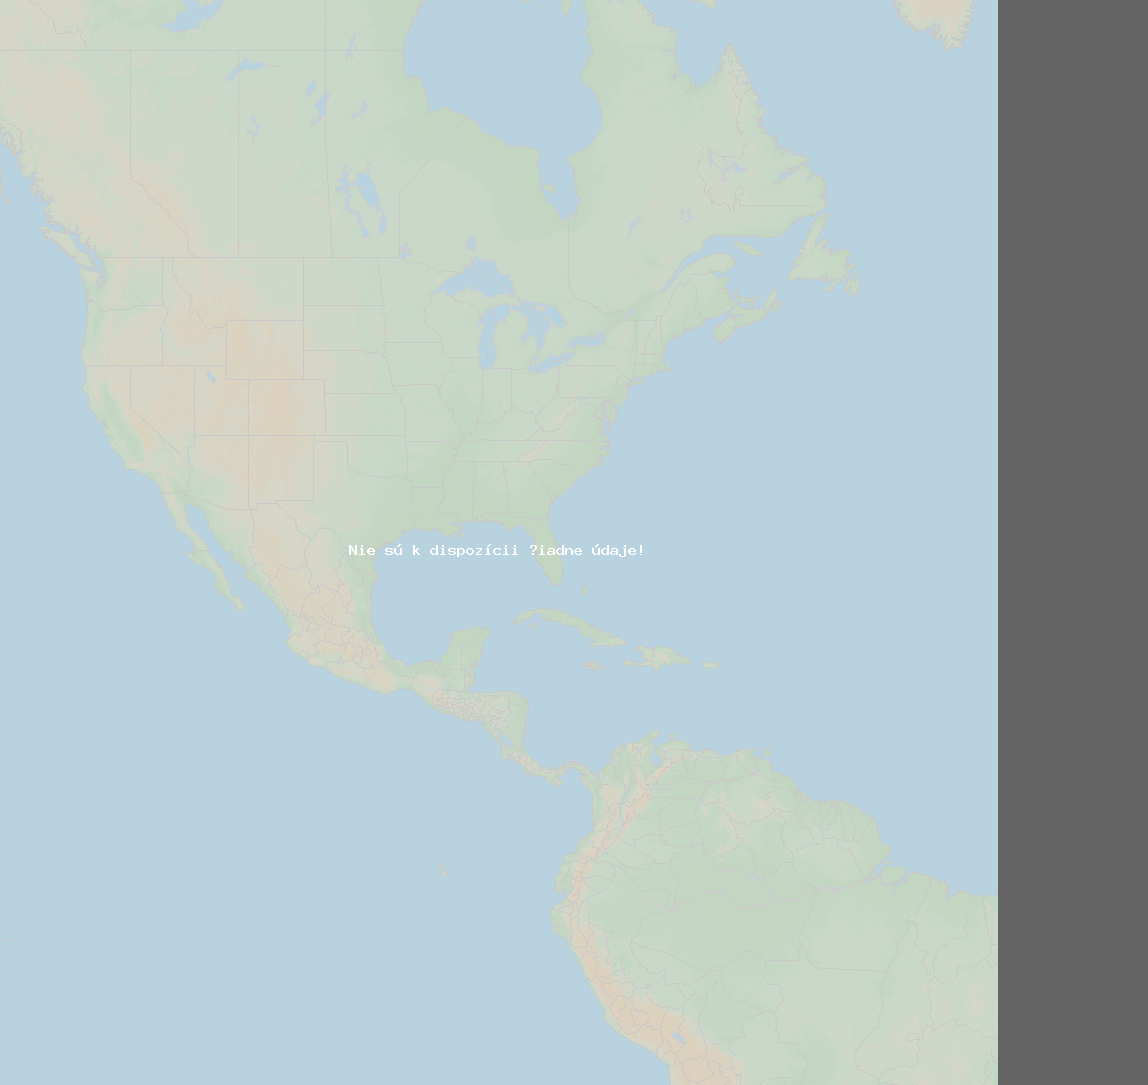 Pomer bleskov (Stanica Baie-Comeau QC) North America 2019 Október